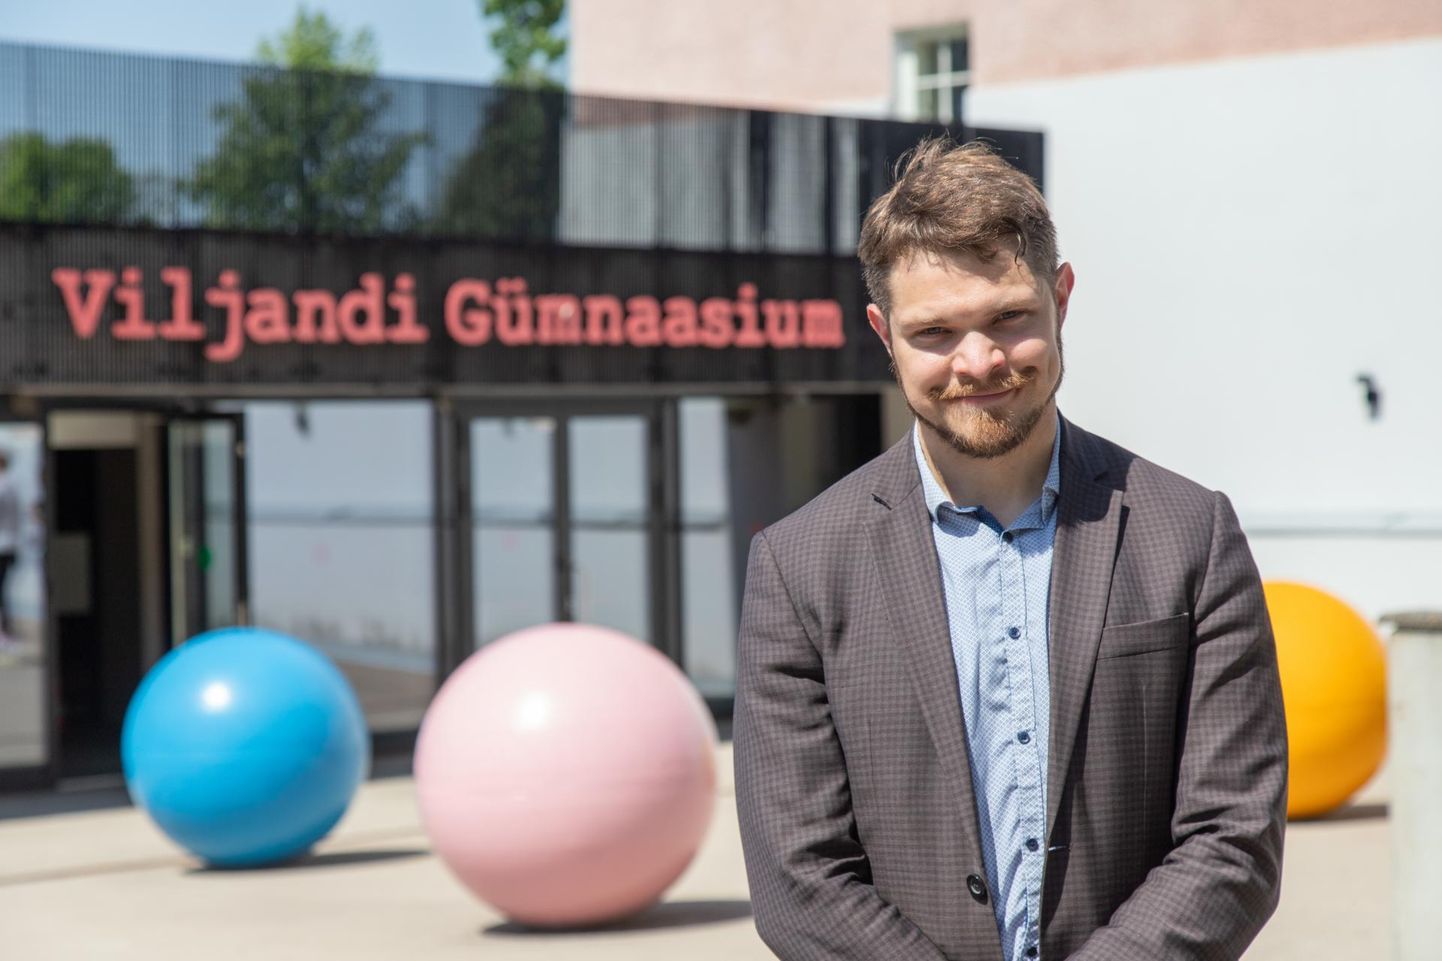 Viljandi gümnaasiumis on Juhan-Mart Salumäe töötanud ühe väikse pauisga 2014. aastast alates. Nüüd on ta valitud kooli uueks direktoriks.